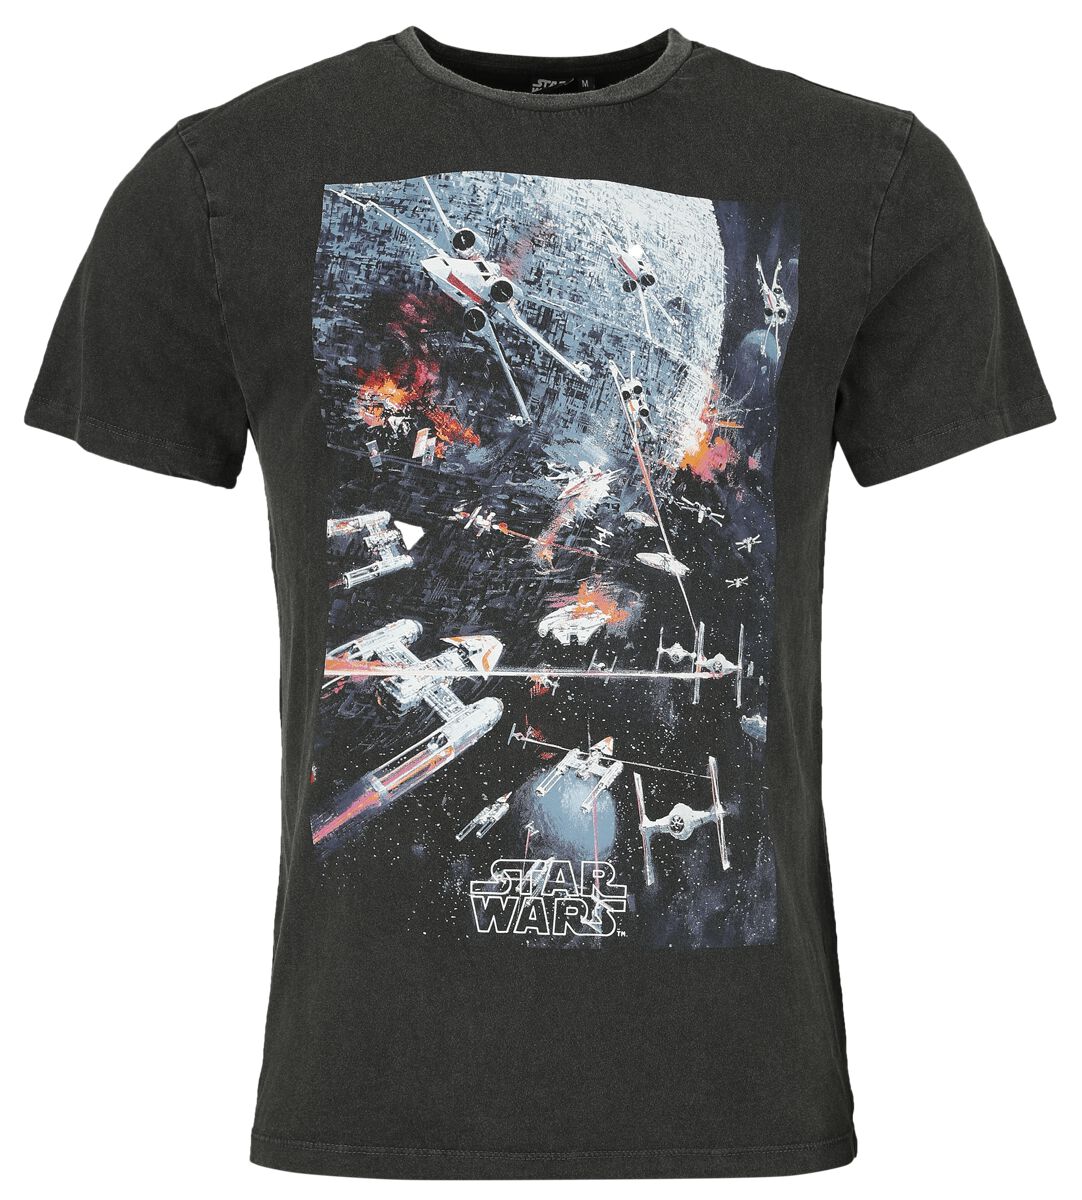 Star Wars T-Shirt - Classic - Space War - S bis XL - für Männer - Größe S - schwarz  - Lizenzierter Fanartikel